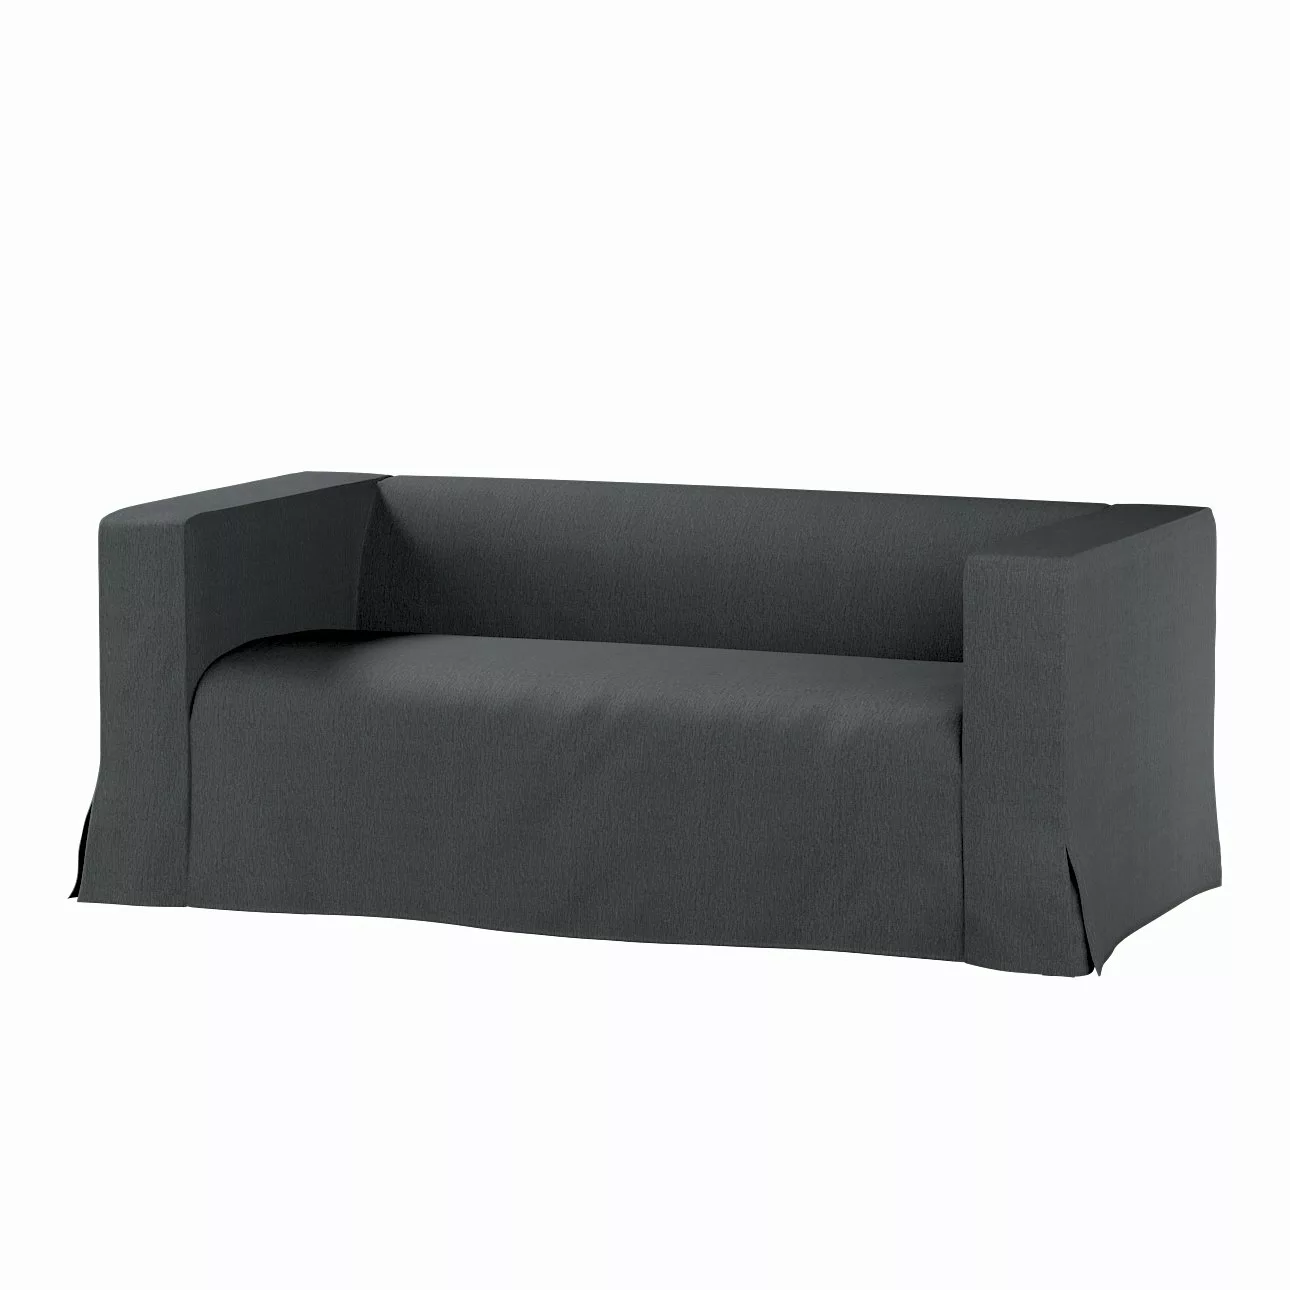 Bezug für Klippan 2-Sitzer Sofa, lang mit Kellerfalte, stahlgrau, Klippan 2 günstig online kaufen